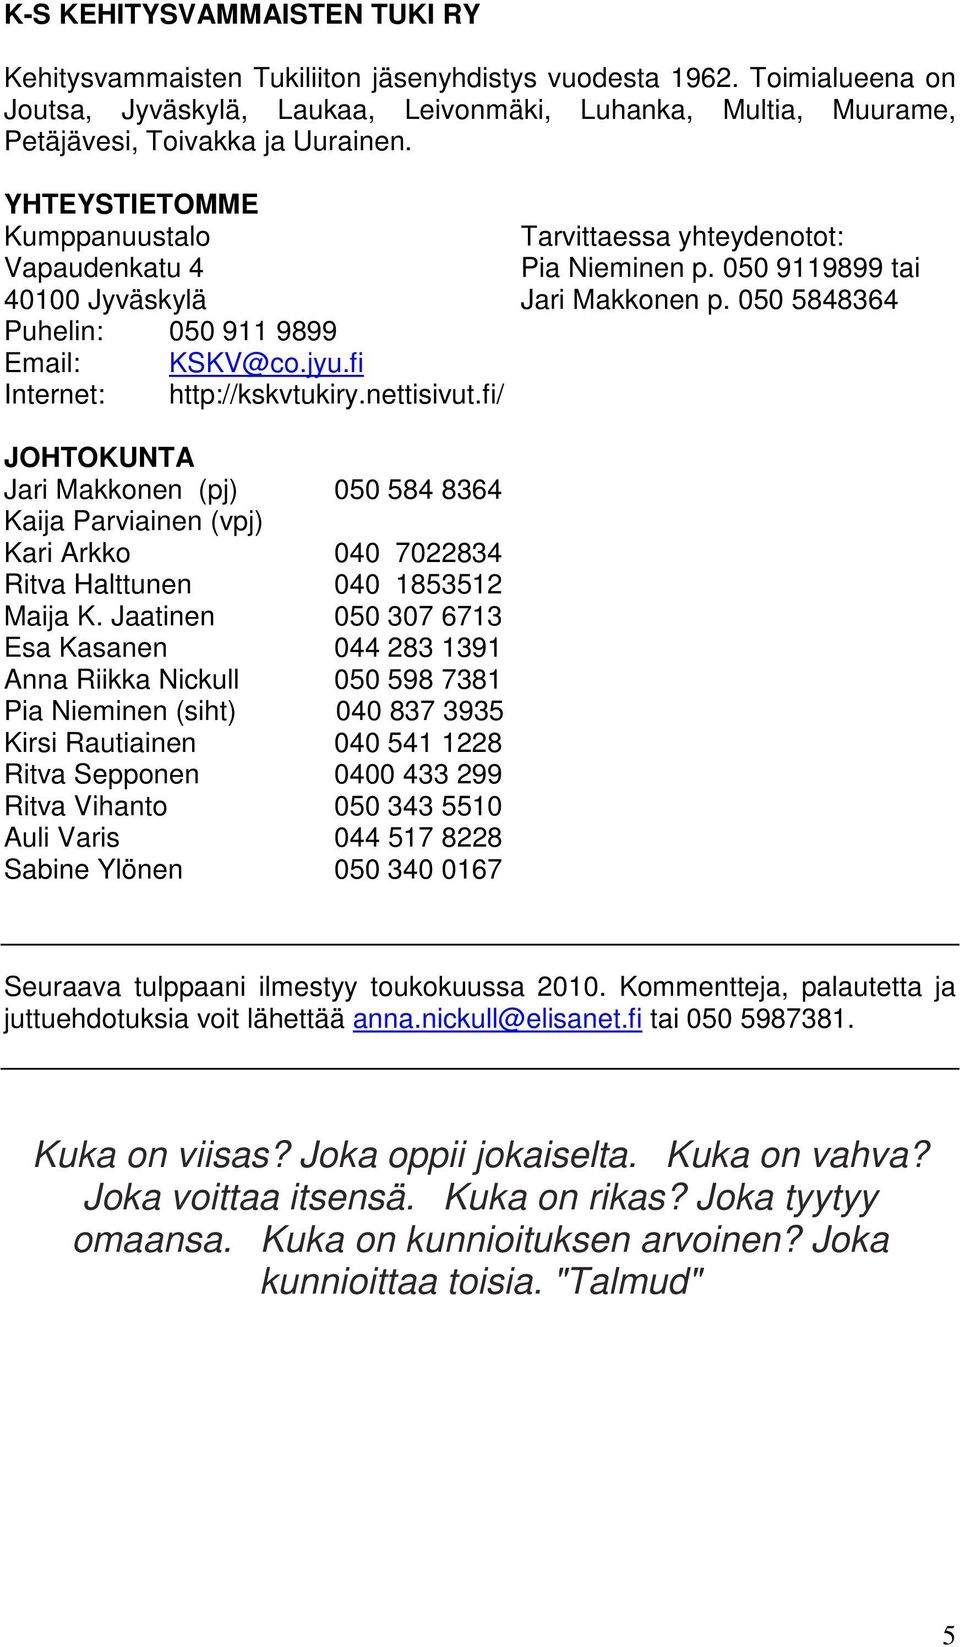 YHTEYSTIETOMME Kumppanuustalo Vapaudenkatu 4 40100 Jyväskylä Puhelin: 050 911 9899 Email: KSKV@co.jyu.fi Internet: http://kskvtukiry.nettisivut.fi/ Tarvittaessa yhteydenotot: Pia Nieminen p.